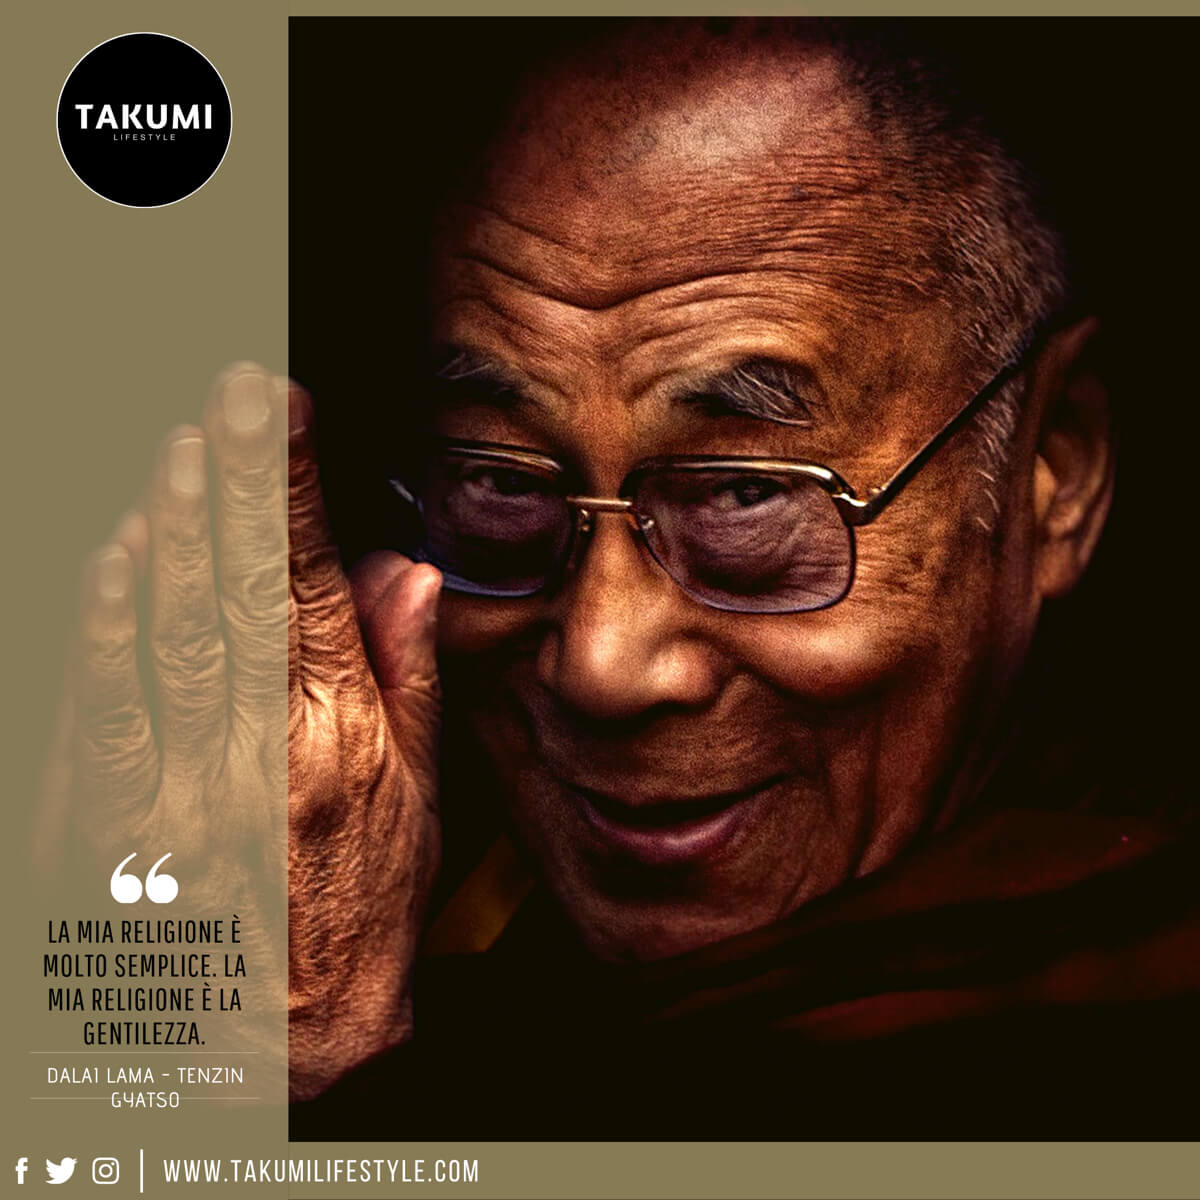 TAKUMI lifestyle - quote#25bis - Dalai Lama